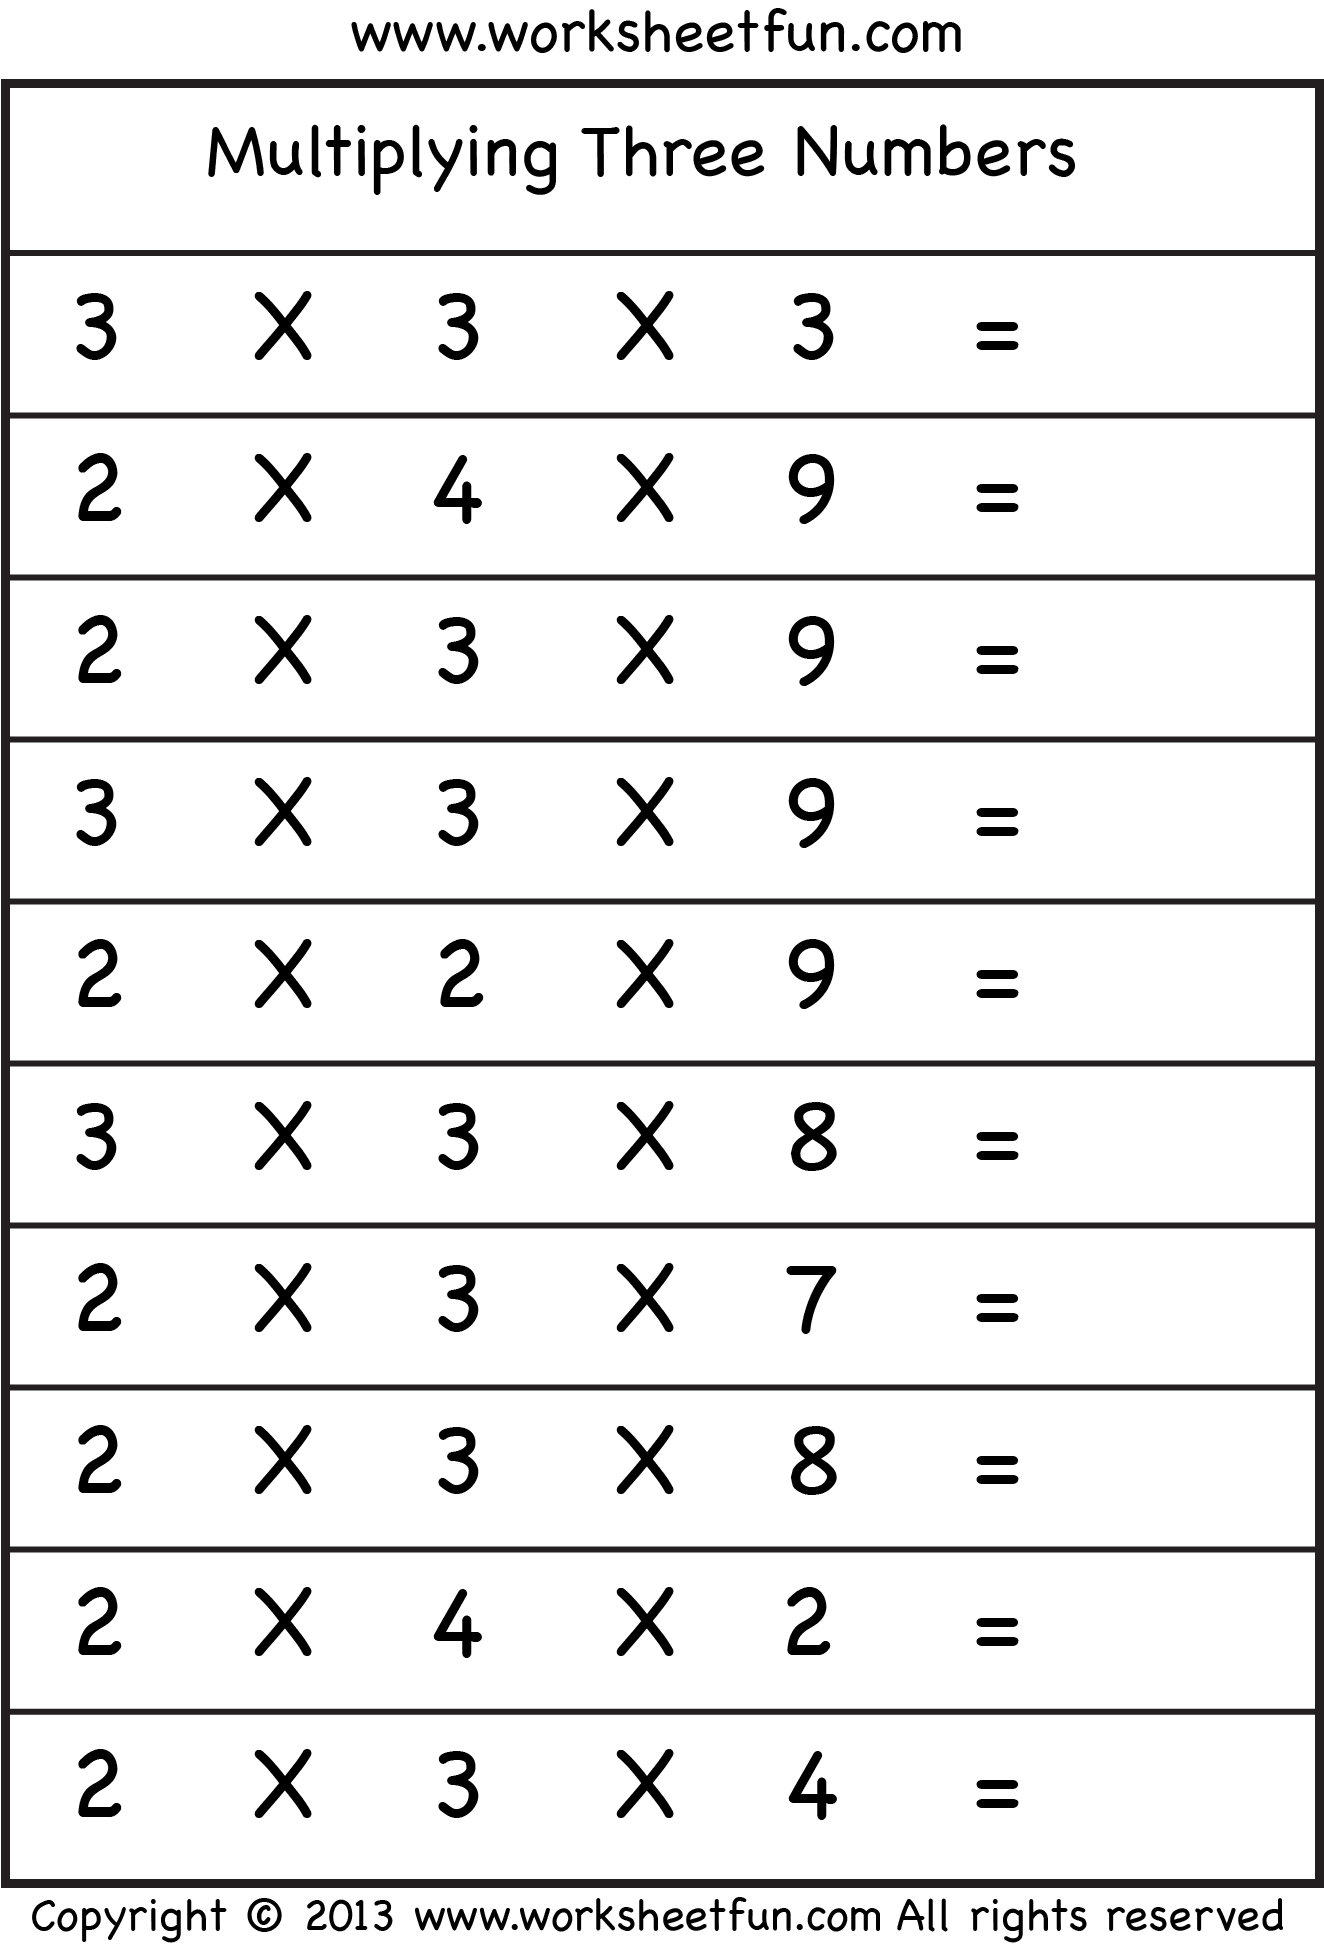 Multiplying 3 Numbers – Three Worksheets / FREE Printable Worksheets